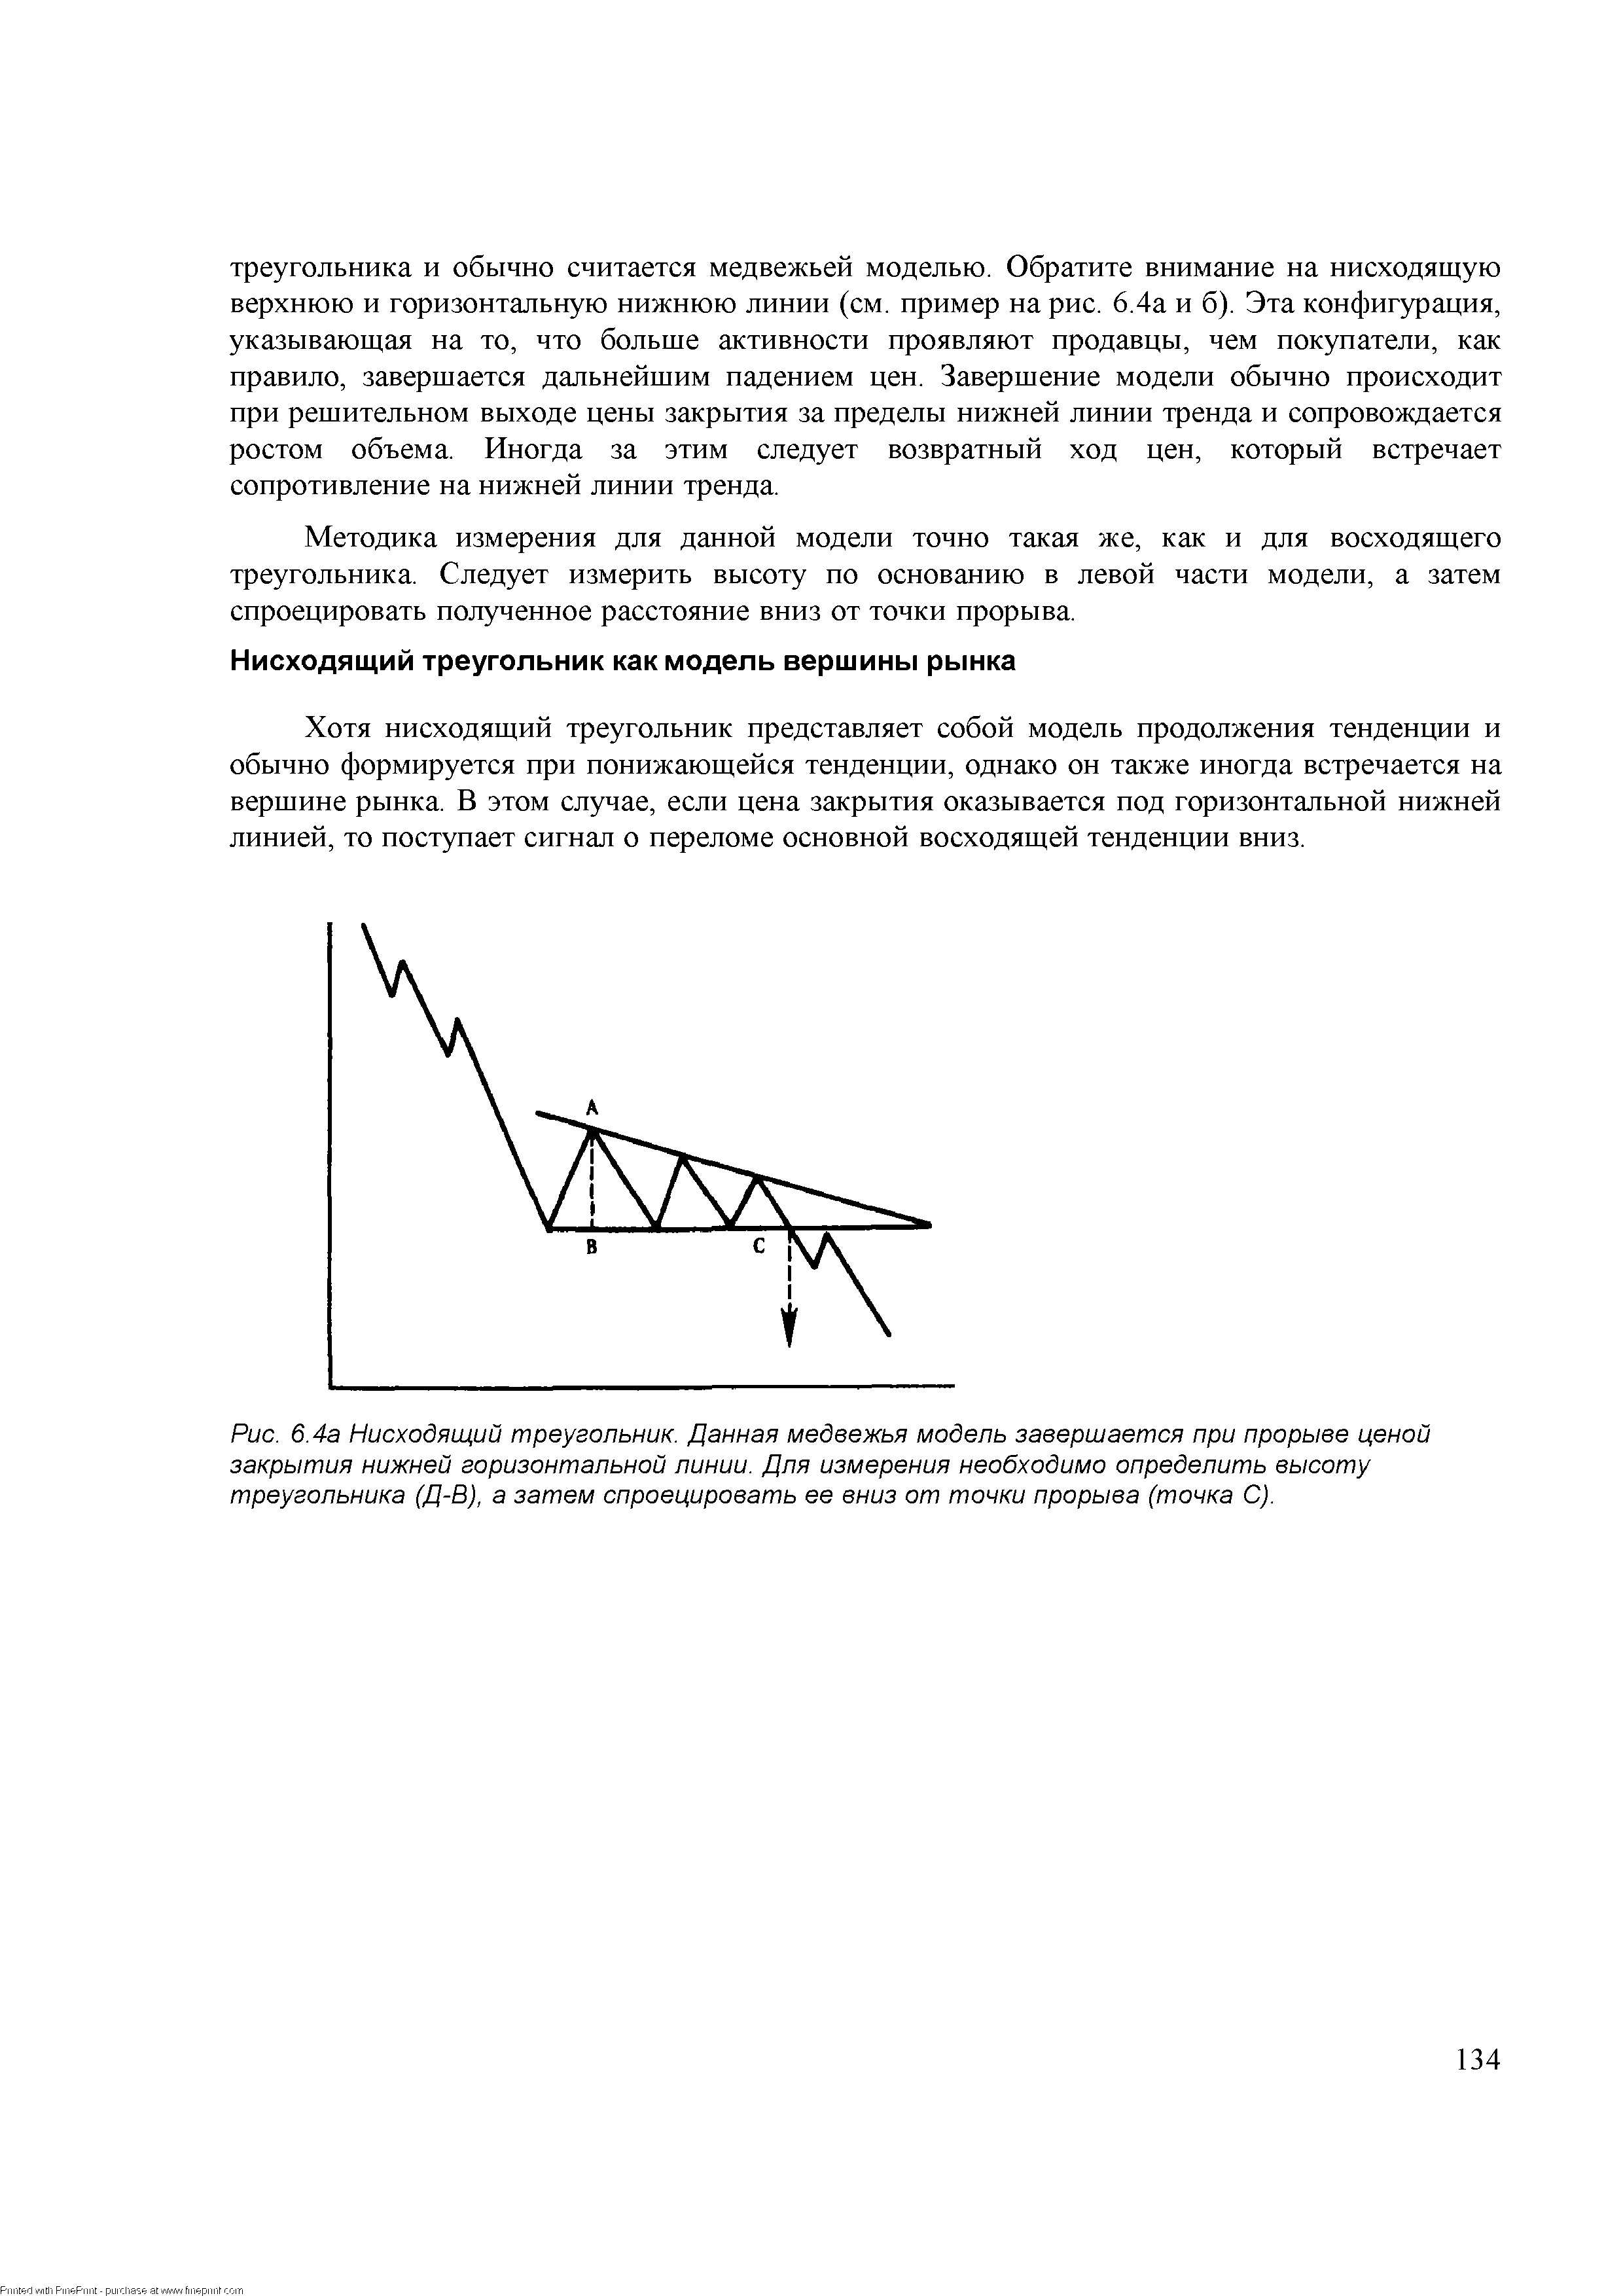 Рис. 6.4а <a href="/info/14270">Нисходящий треугольник</a>. Данная медвежья модель завершается при прорыве <a href="/info/51460">ценой закрытия</a> нижней горизонтальной линии. Для измерения необходимо определить высоту треугольника (Д-В), а затем спроецировать ее вниз от точки прорыва (точка С).
